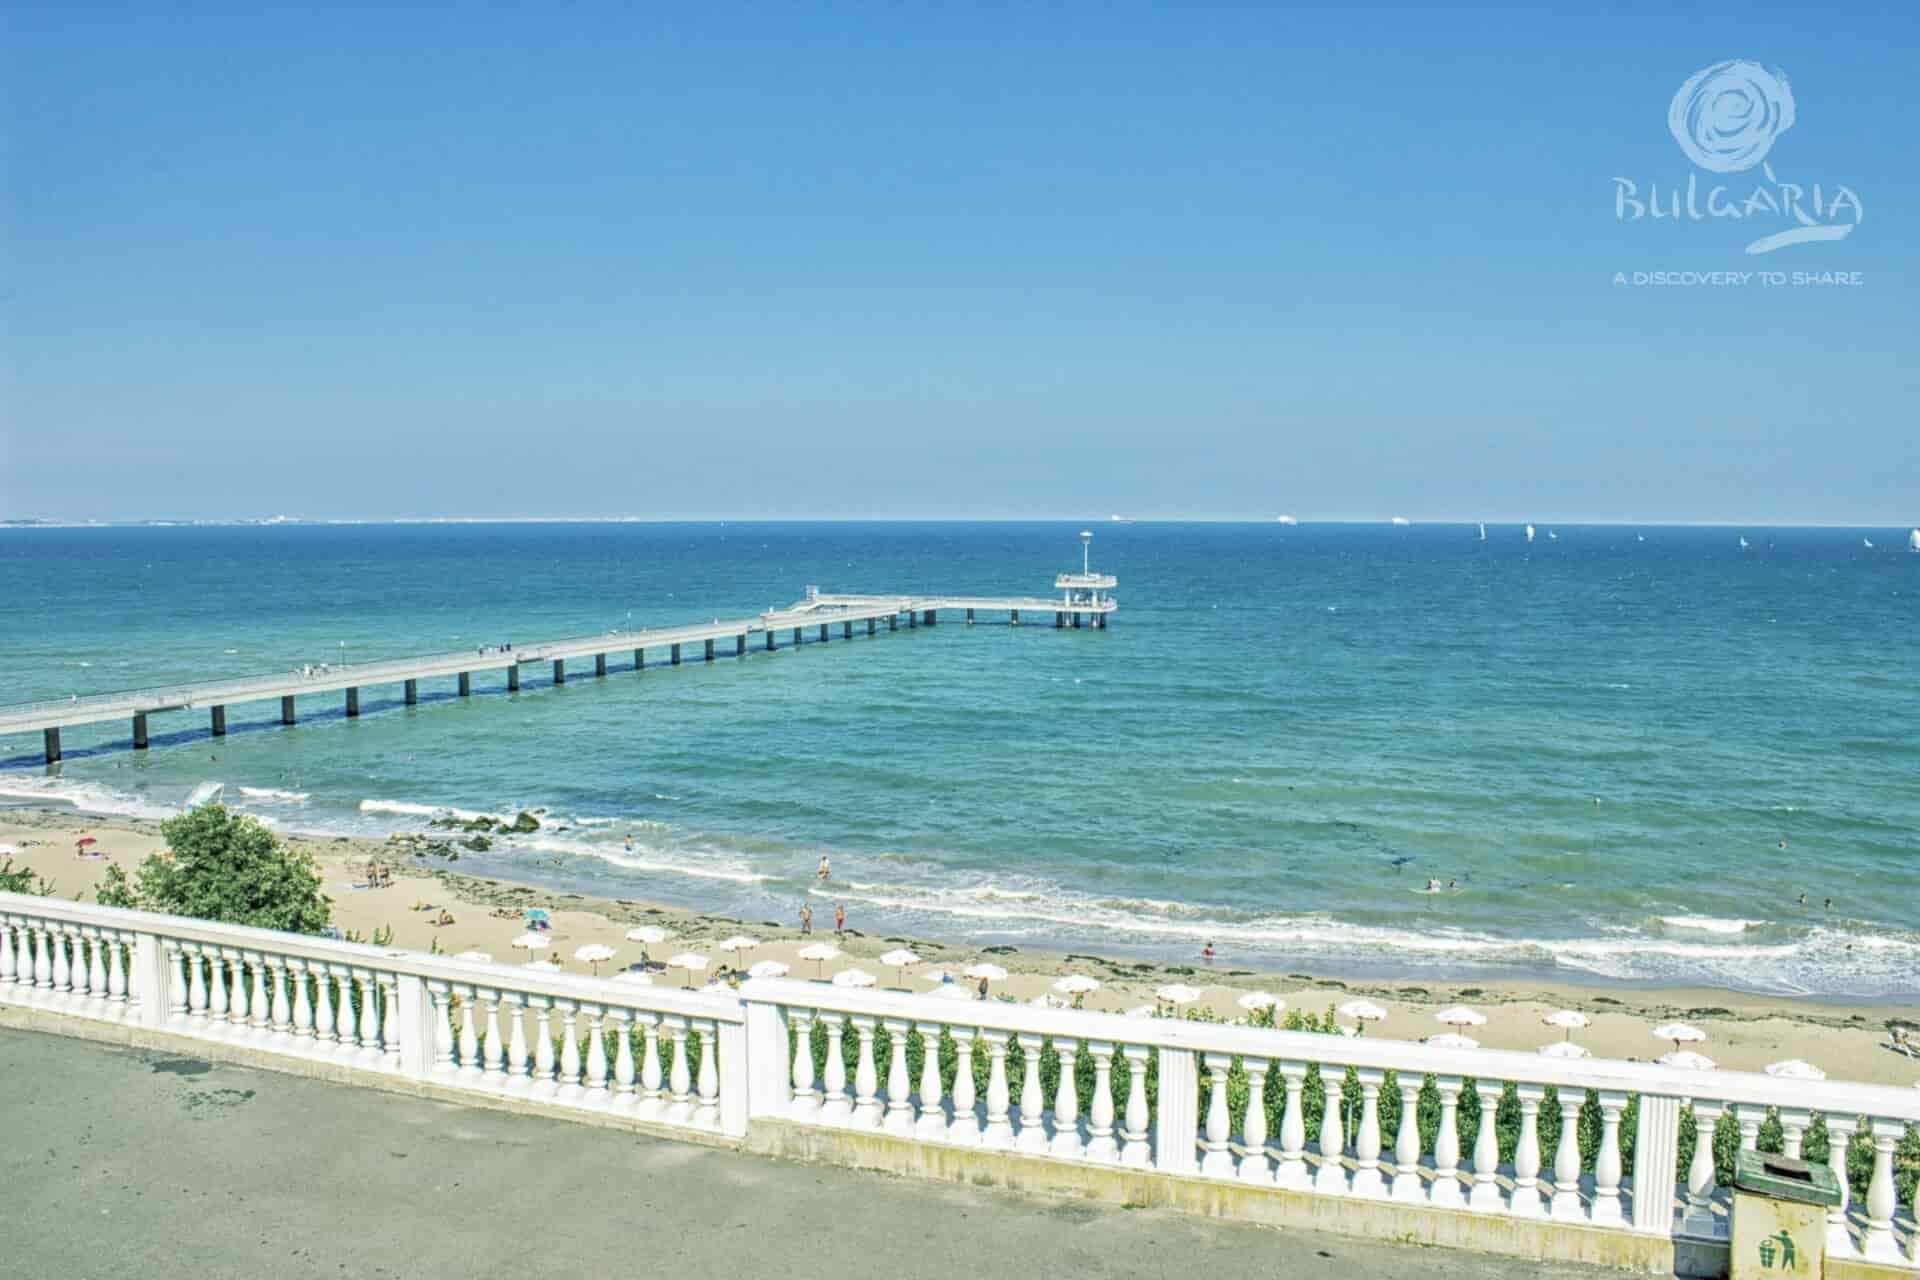 a long pier on a beach